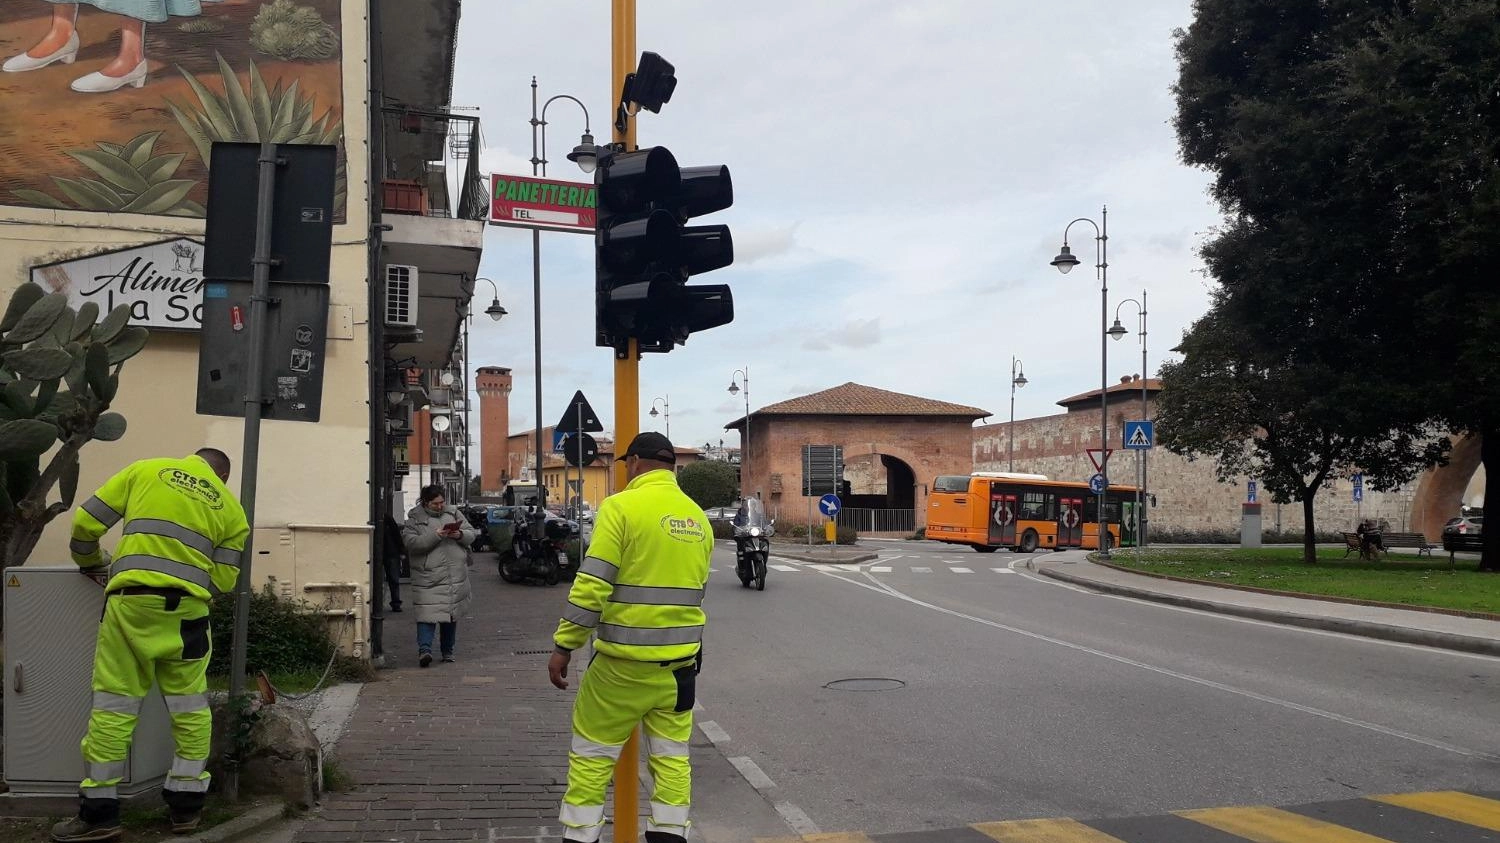 Proteggere i pedoni  Strisce luminose  e nuovi semafori  Meno pericoli in strada